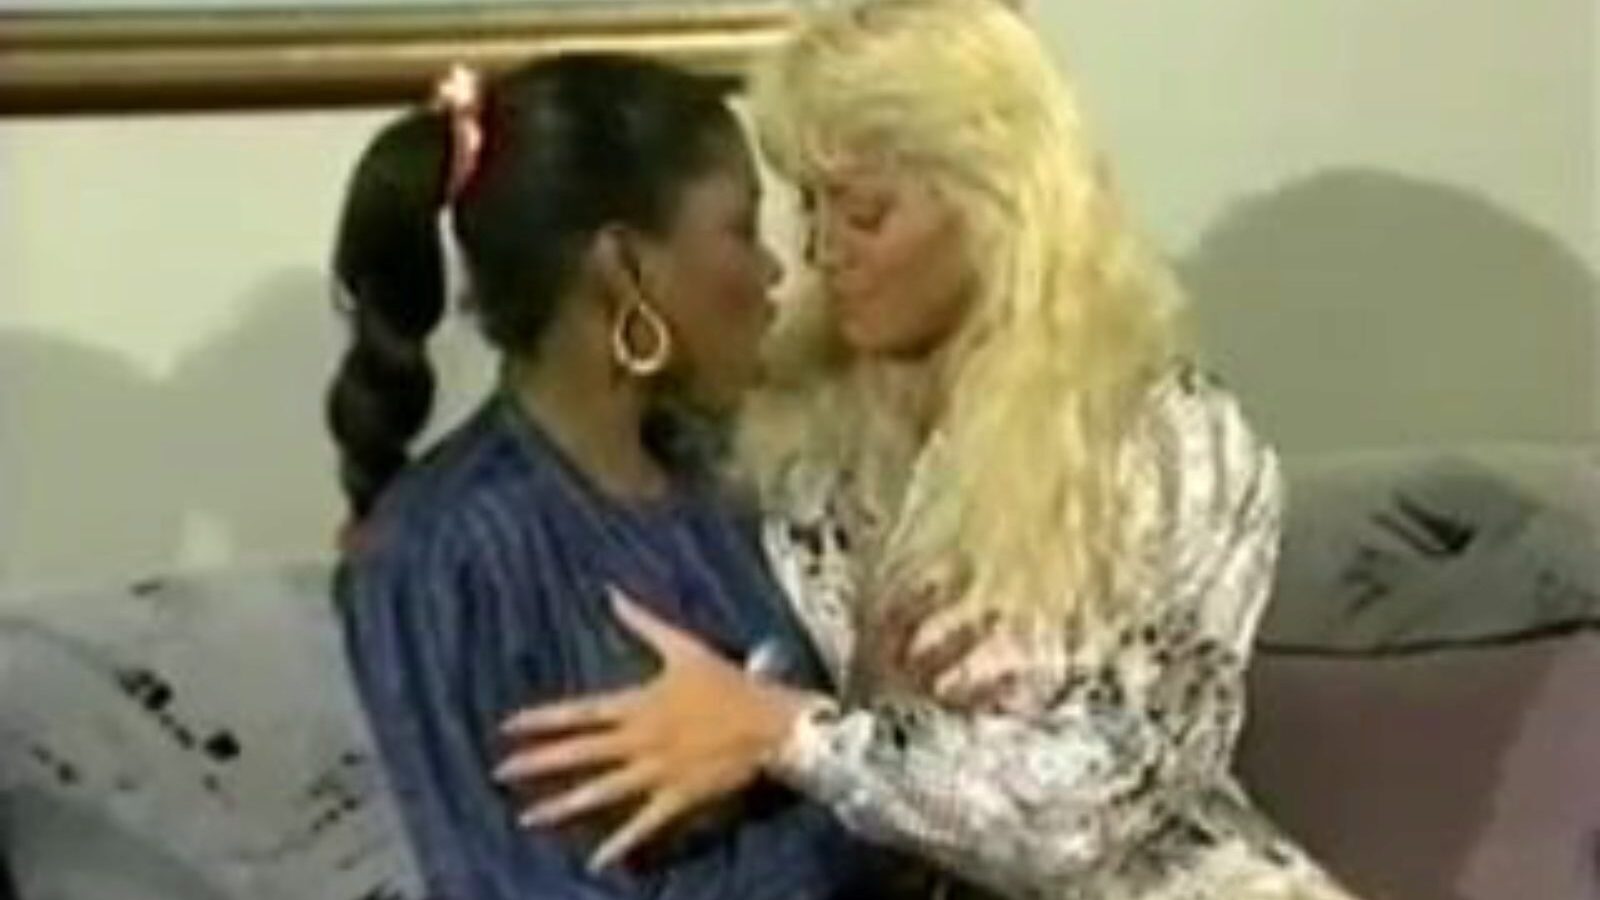 beverlee ja ebony: ilmainen likainen puhuva lesbo porno video 2e katsella beverlee ja ebony putki rakastelu video ilmaiseksi kaikille xhamsterissa, seksikkäimmällä kokoelmalla likaisia ​​puhuvia lesboja karhun ja lesbo sexfight porn clip kohtauksia